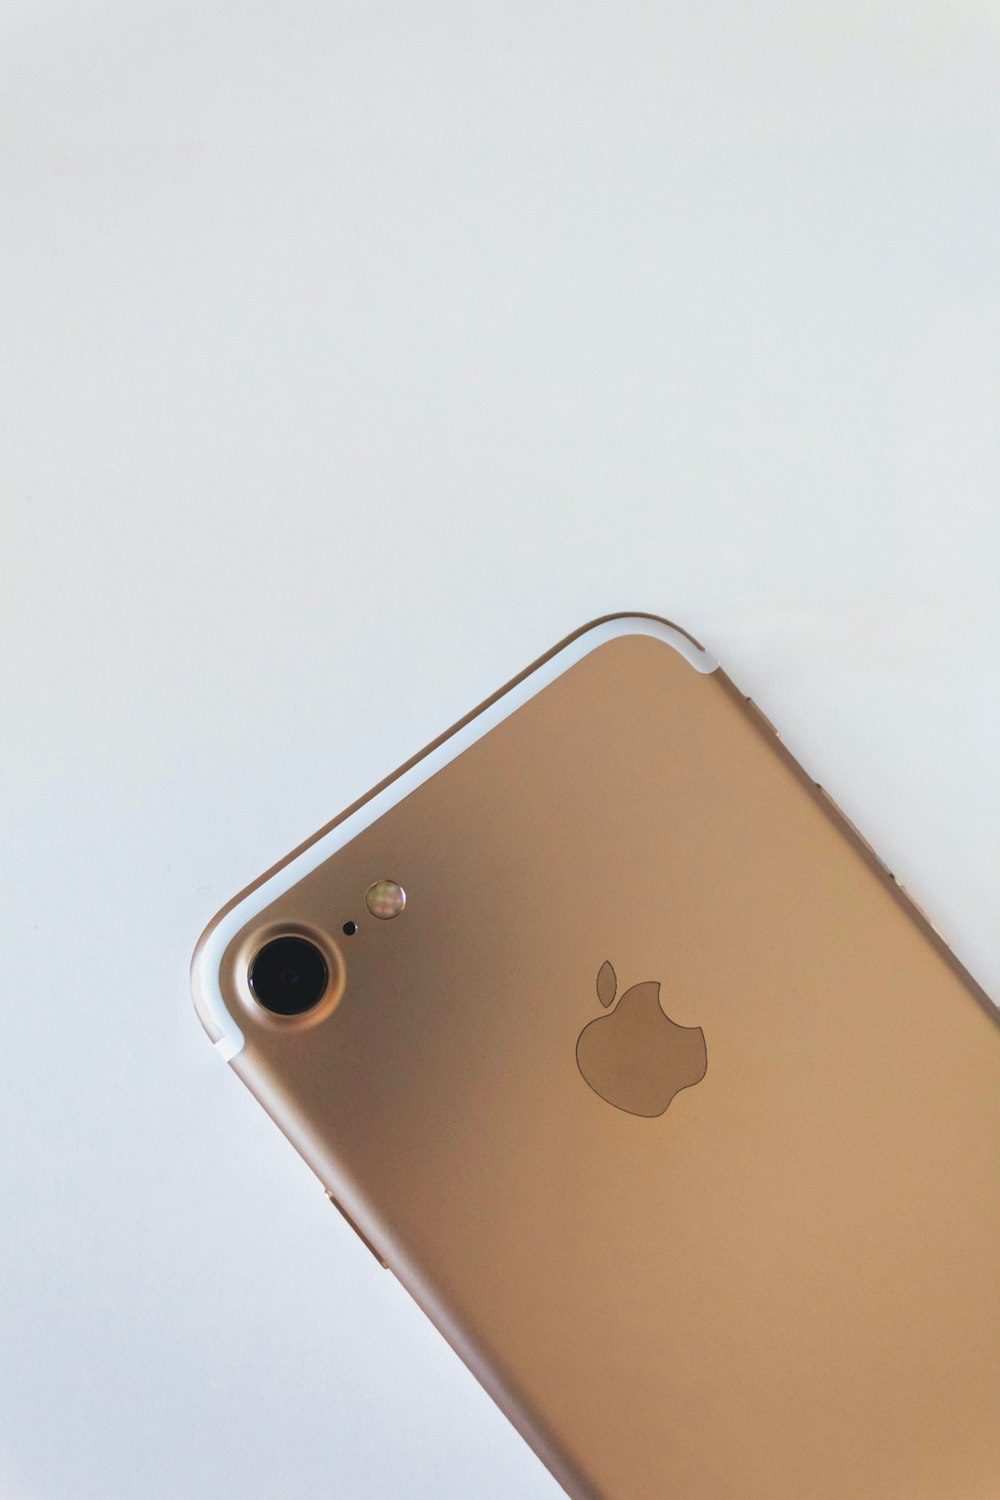 iPhone 6 dourado